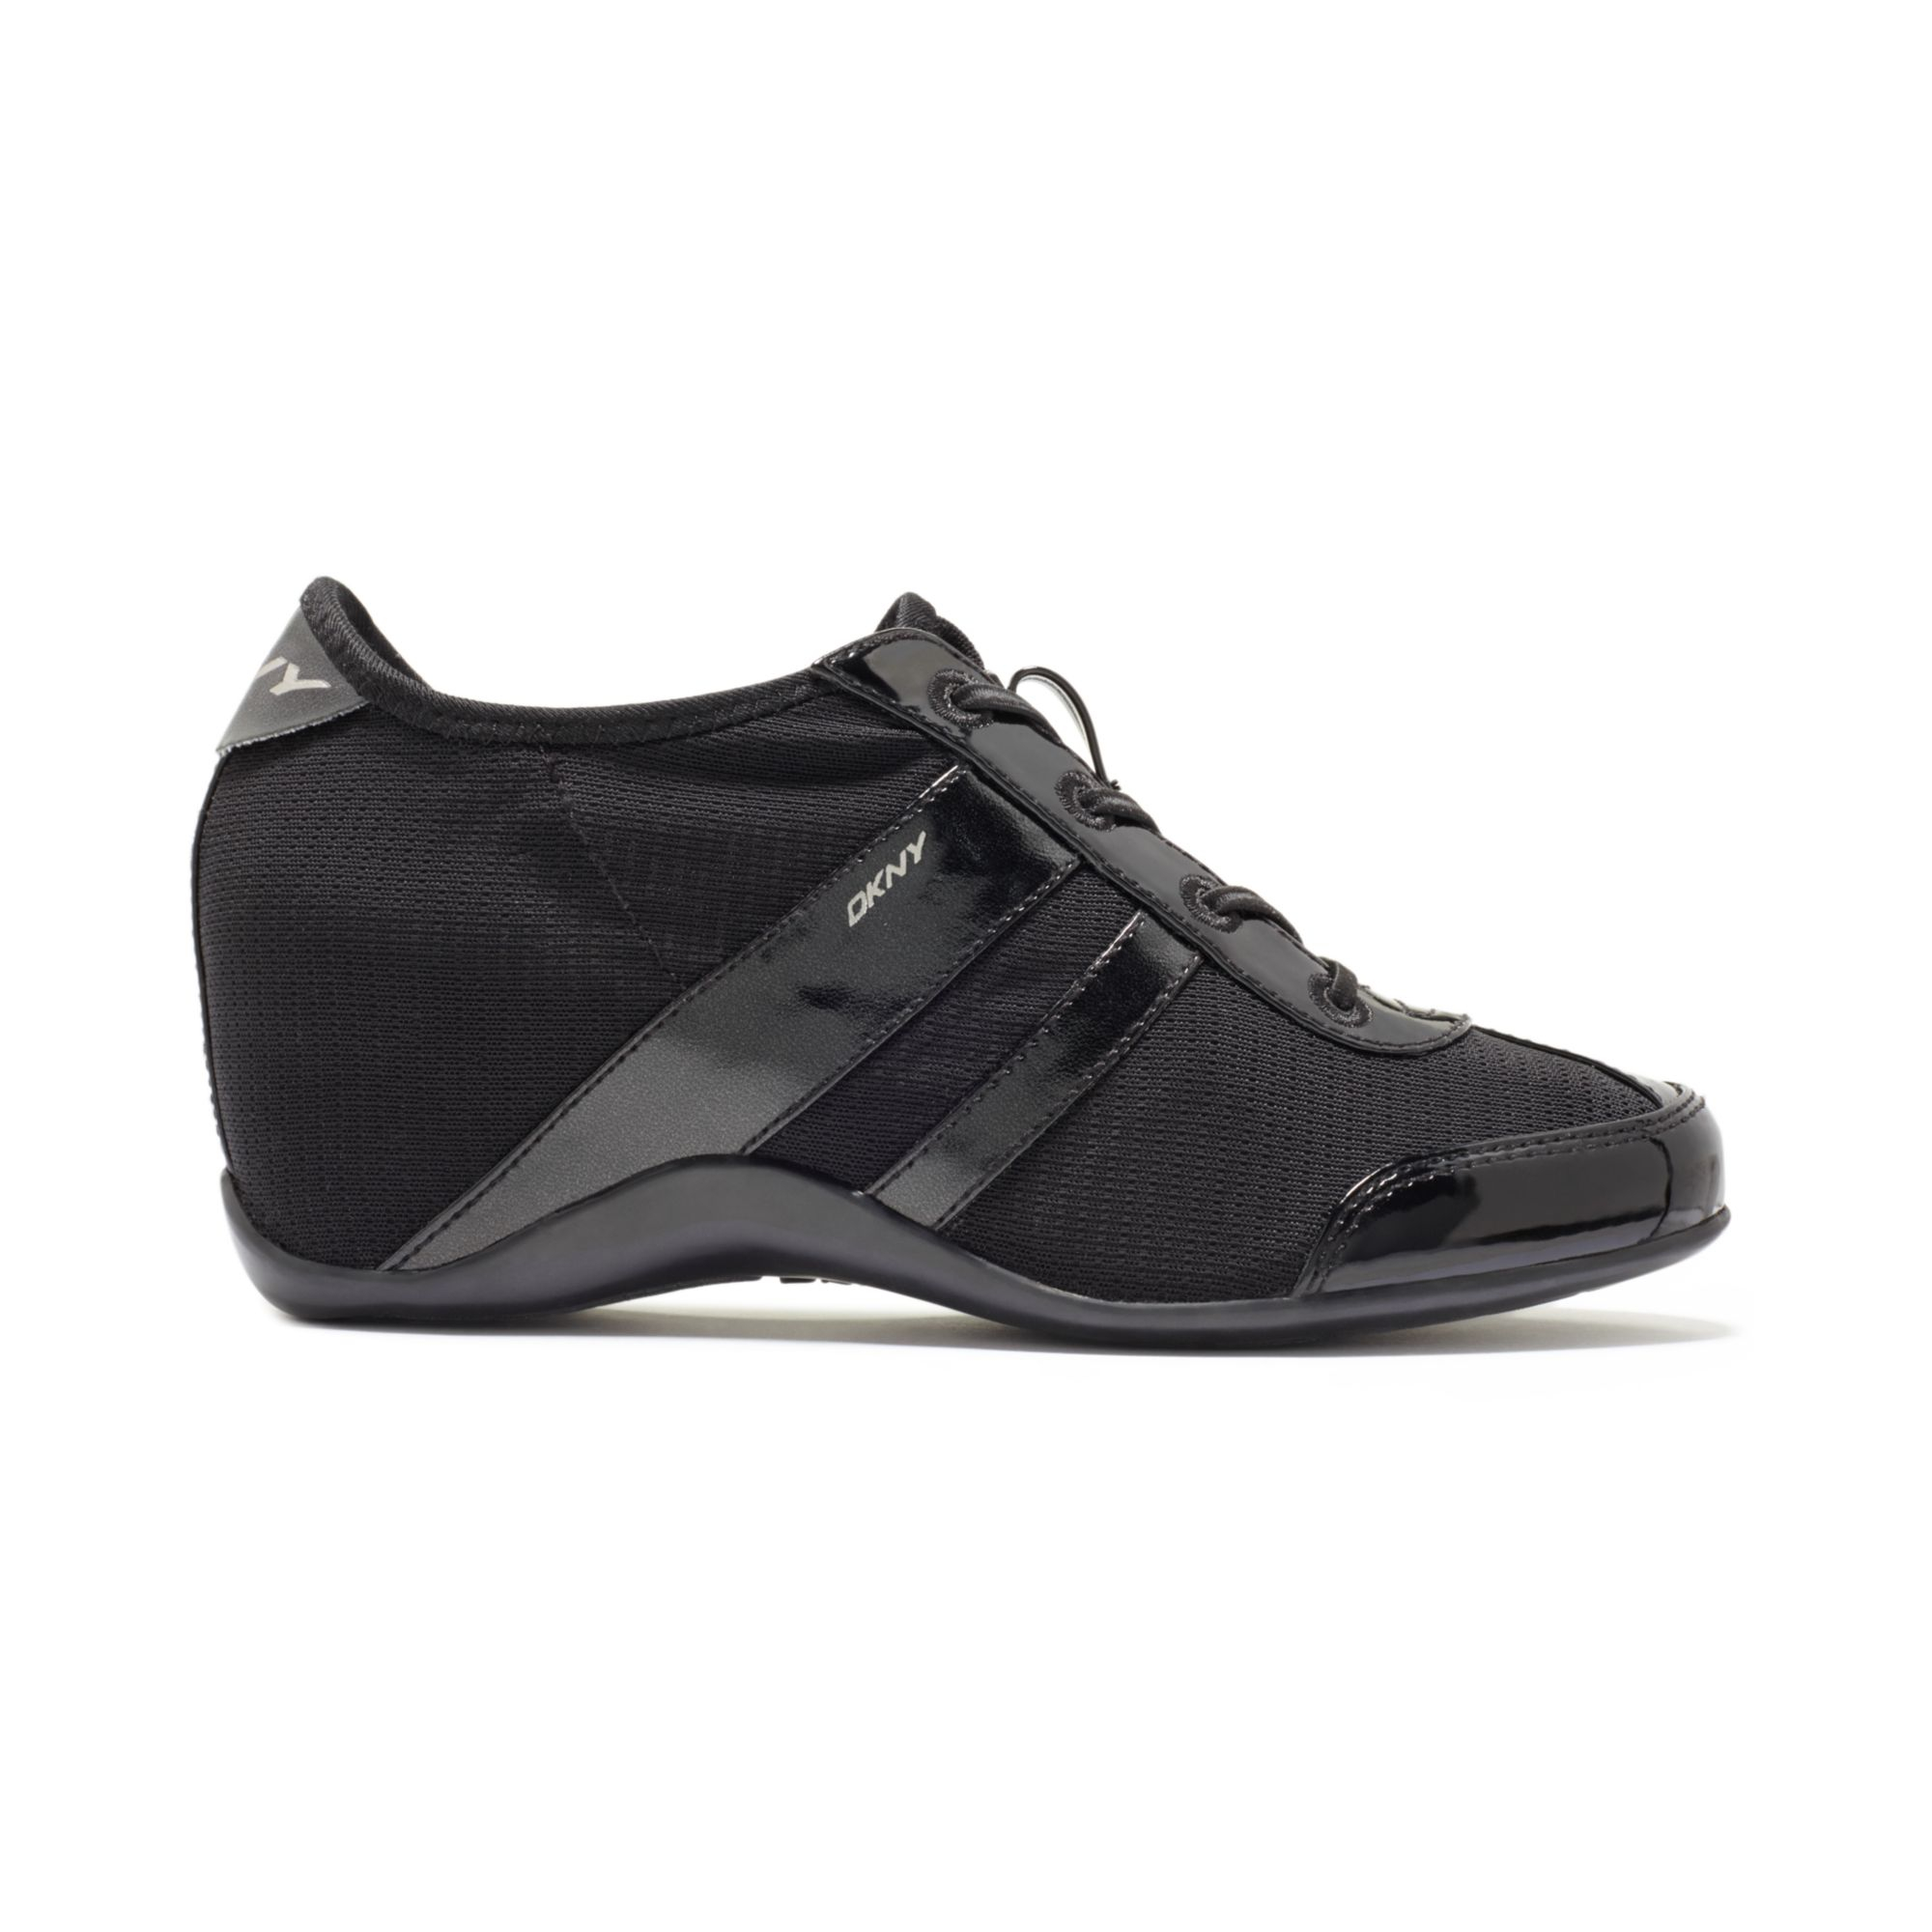 DKNY Paige Wedge Sneakers in Black | Lyst